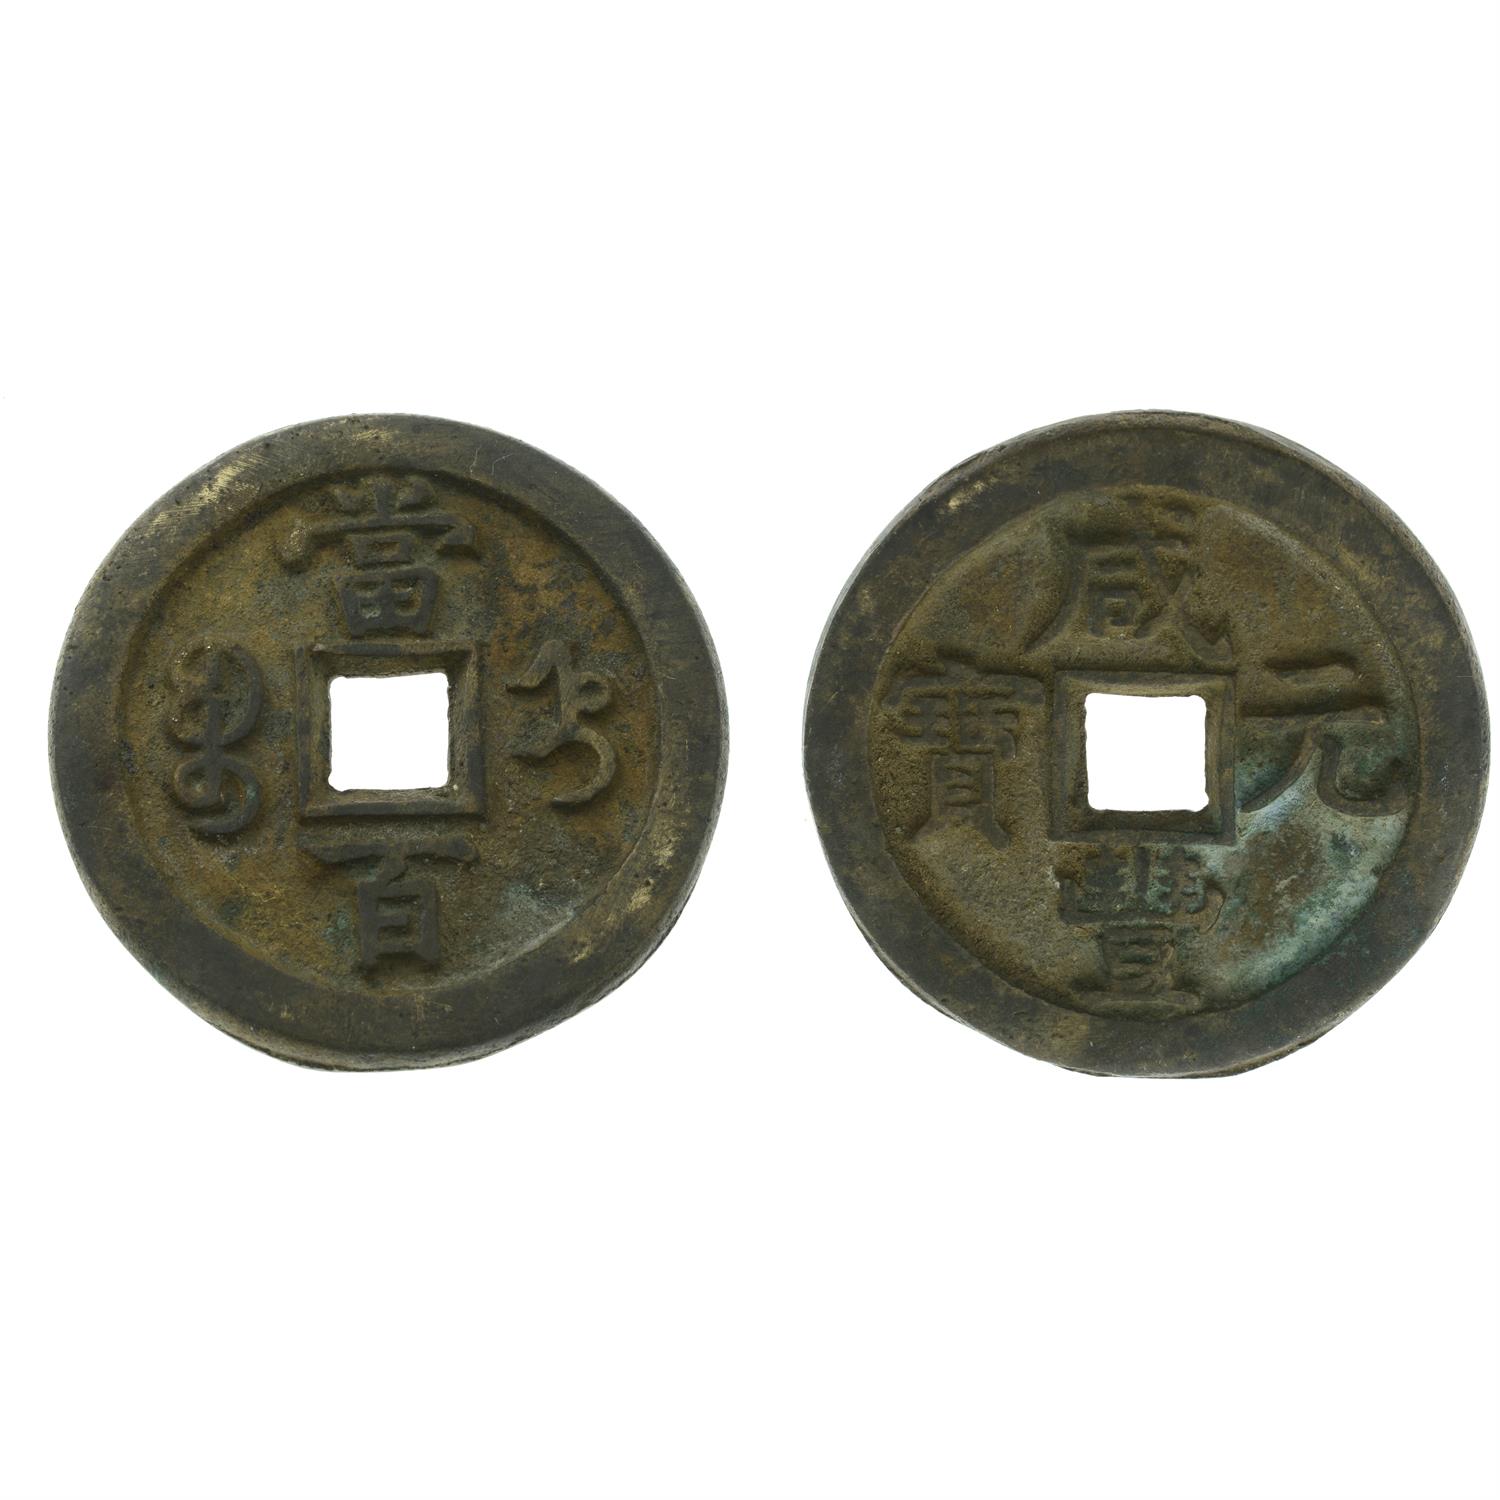 Empire of China, Qing Dynasty. Xianfeng Brass 100 'Yuanbao' Cash.